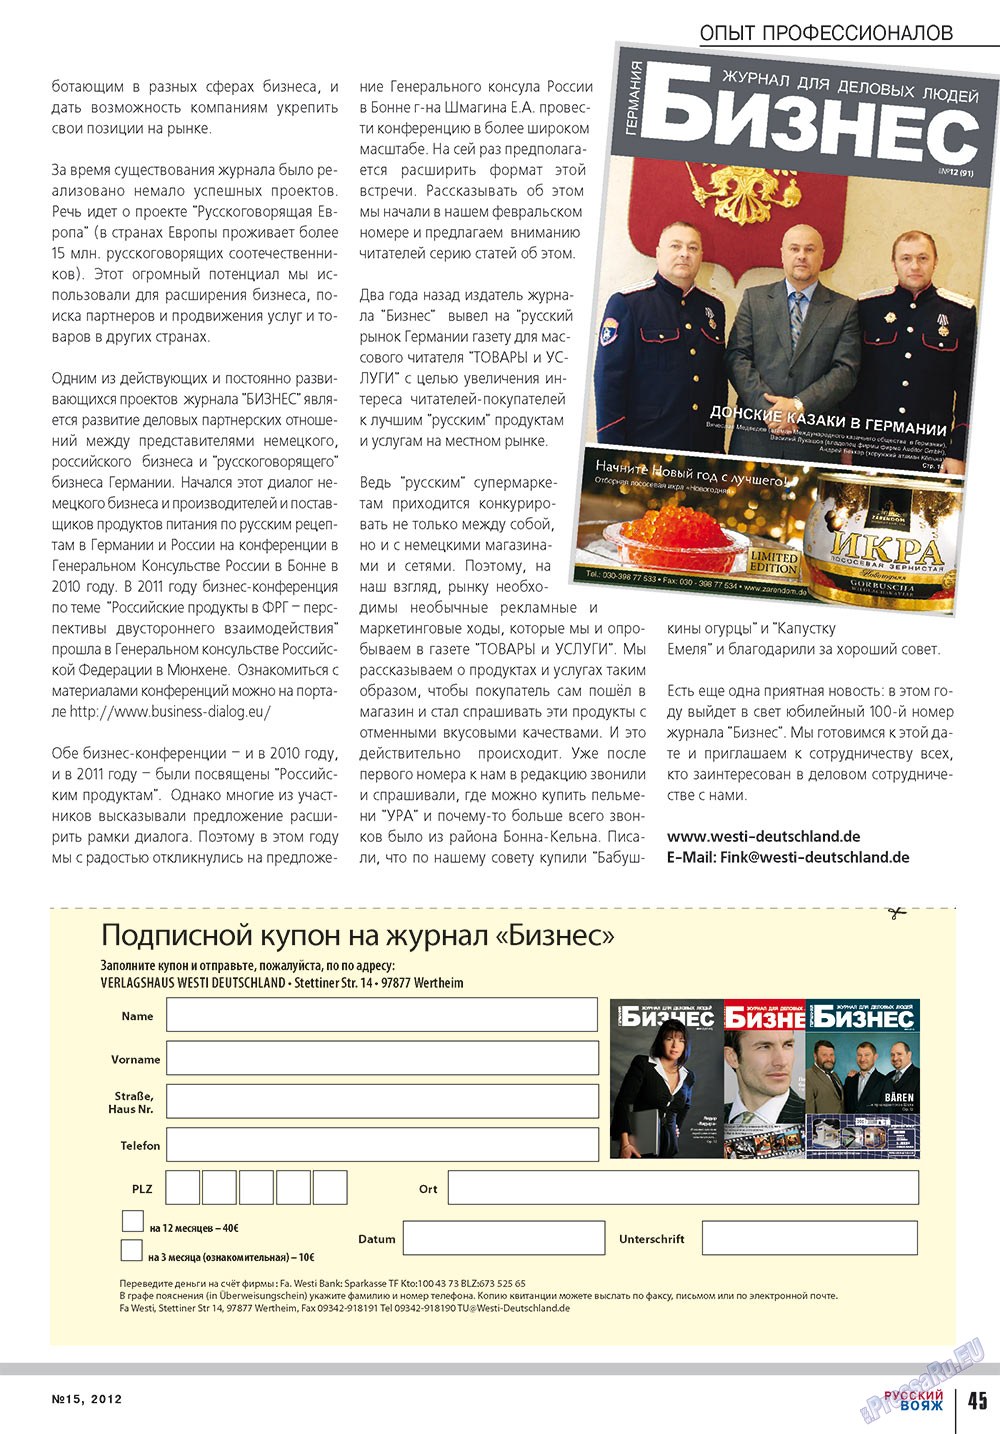 Русский вояж (журнал). 2012 год, номер 15, стр. 45